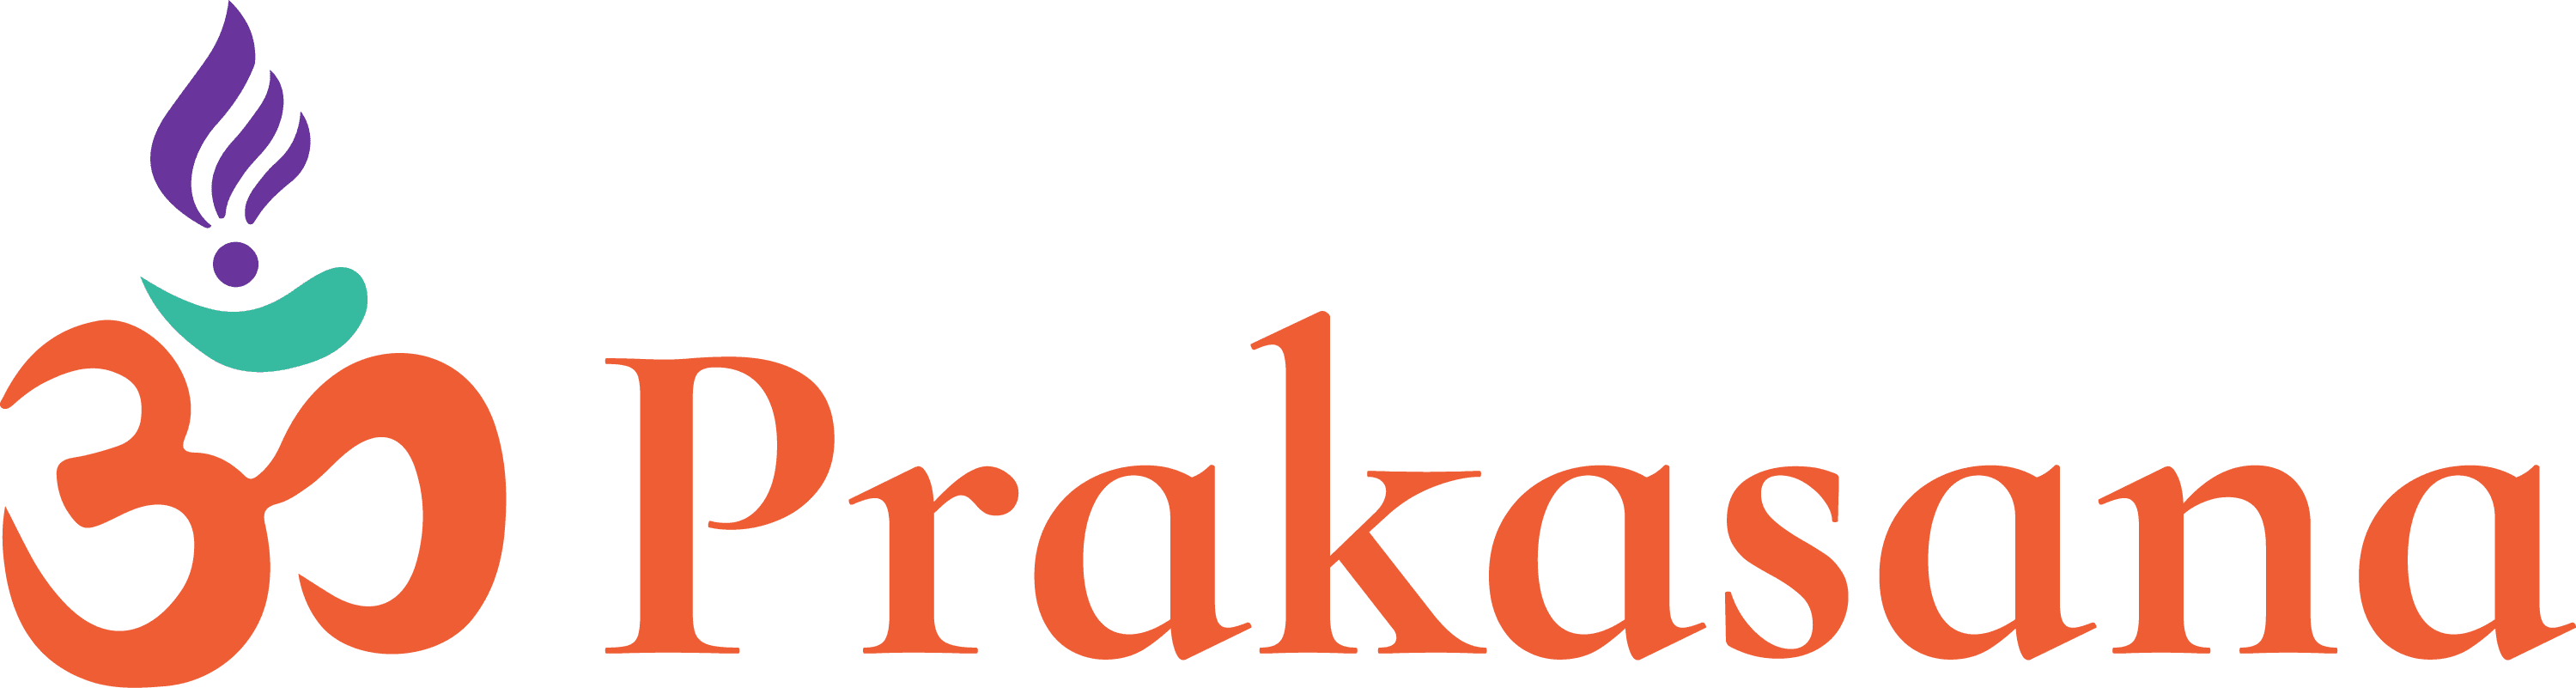 Prakasana Yoga Brand Mark